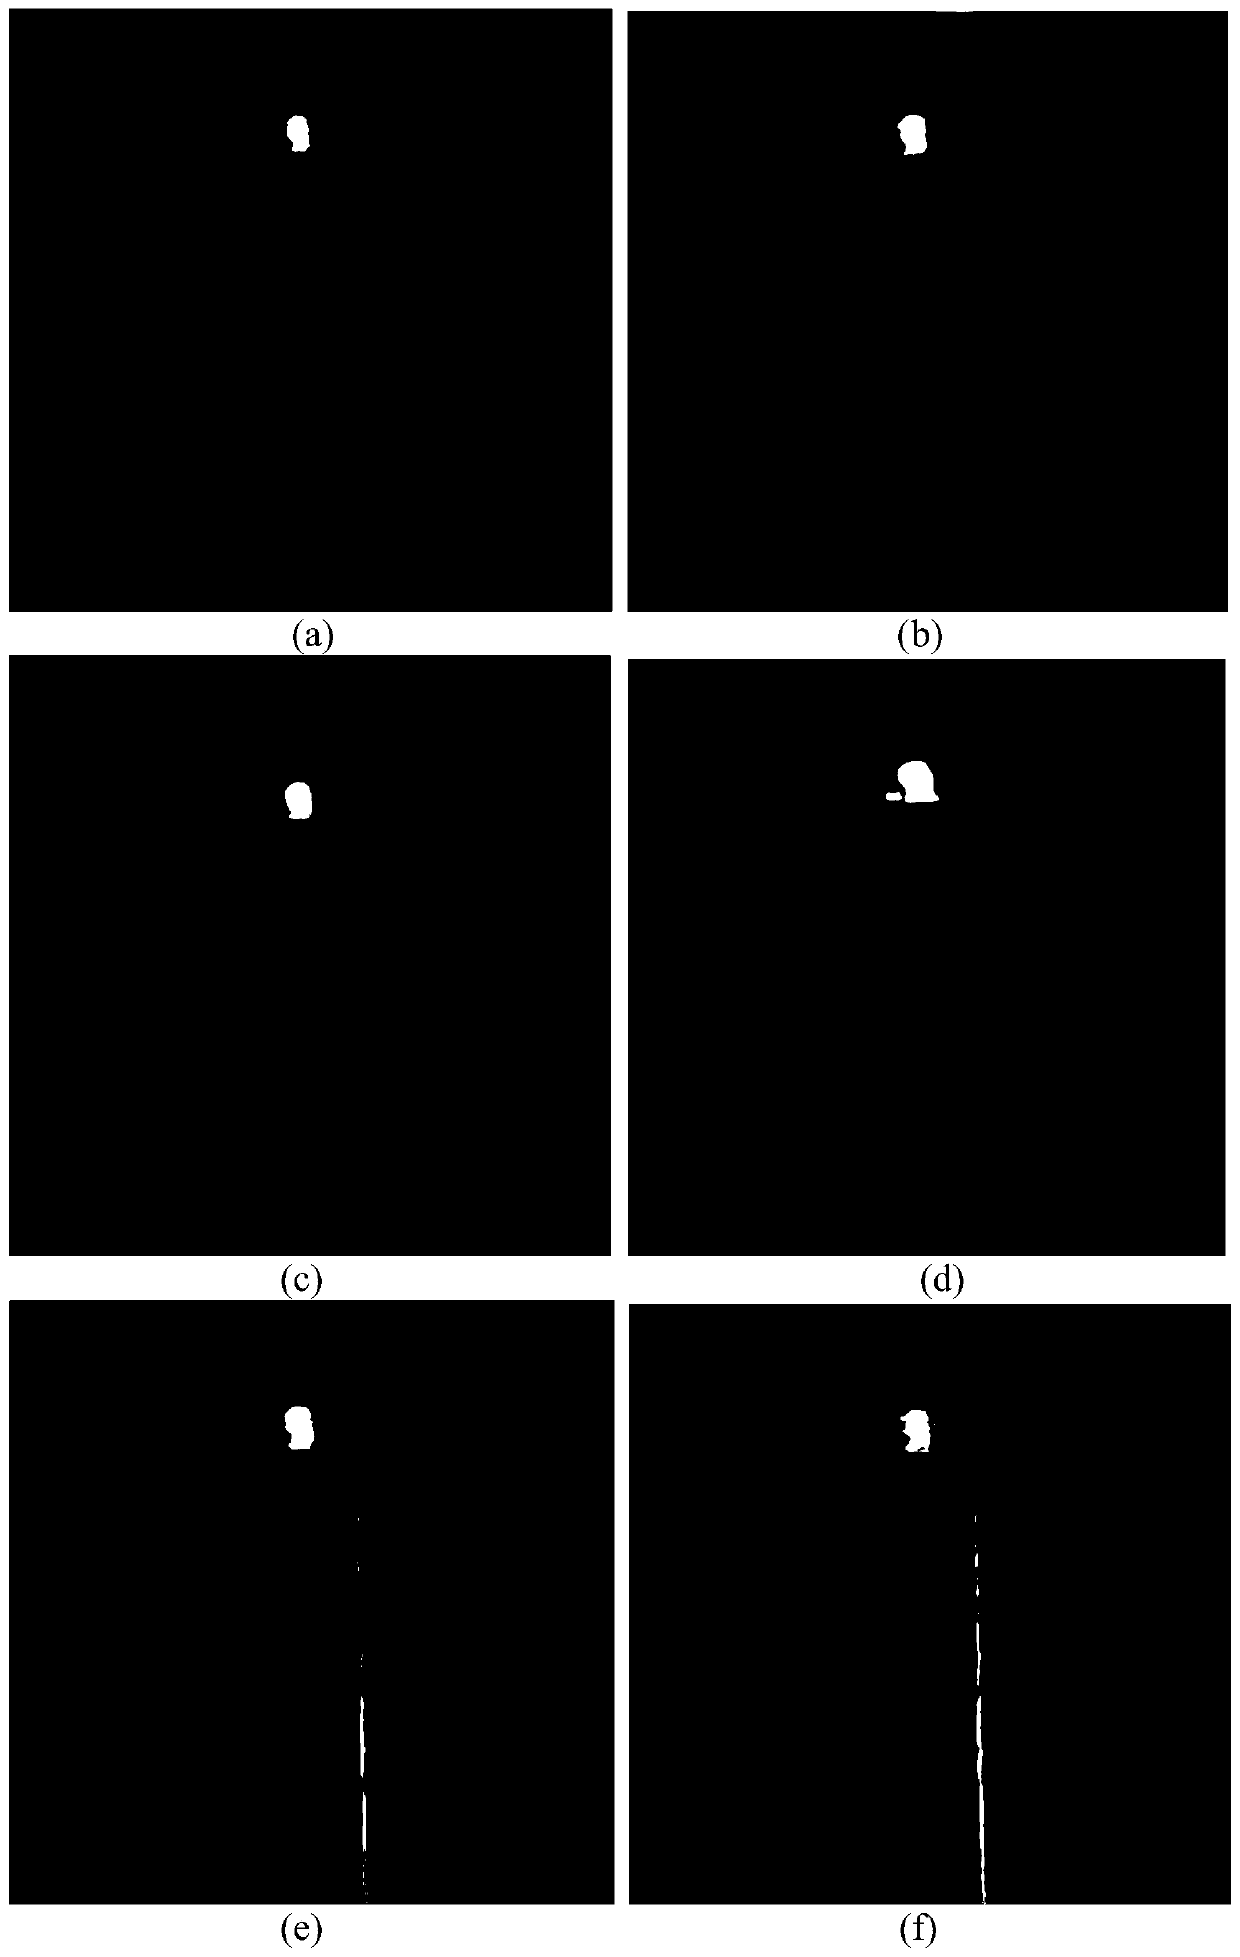 Blind Restoration Method of Turbulent Flow Image Based on Dark Channel Color and Alternating Direction Multiplier Method Optimization